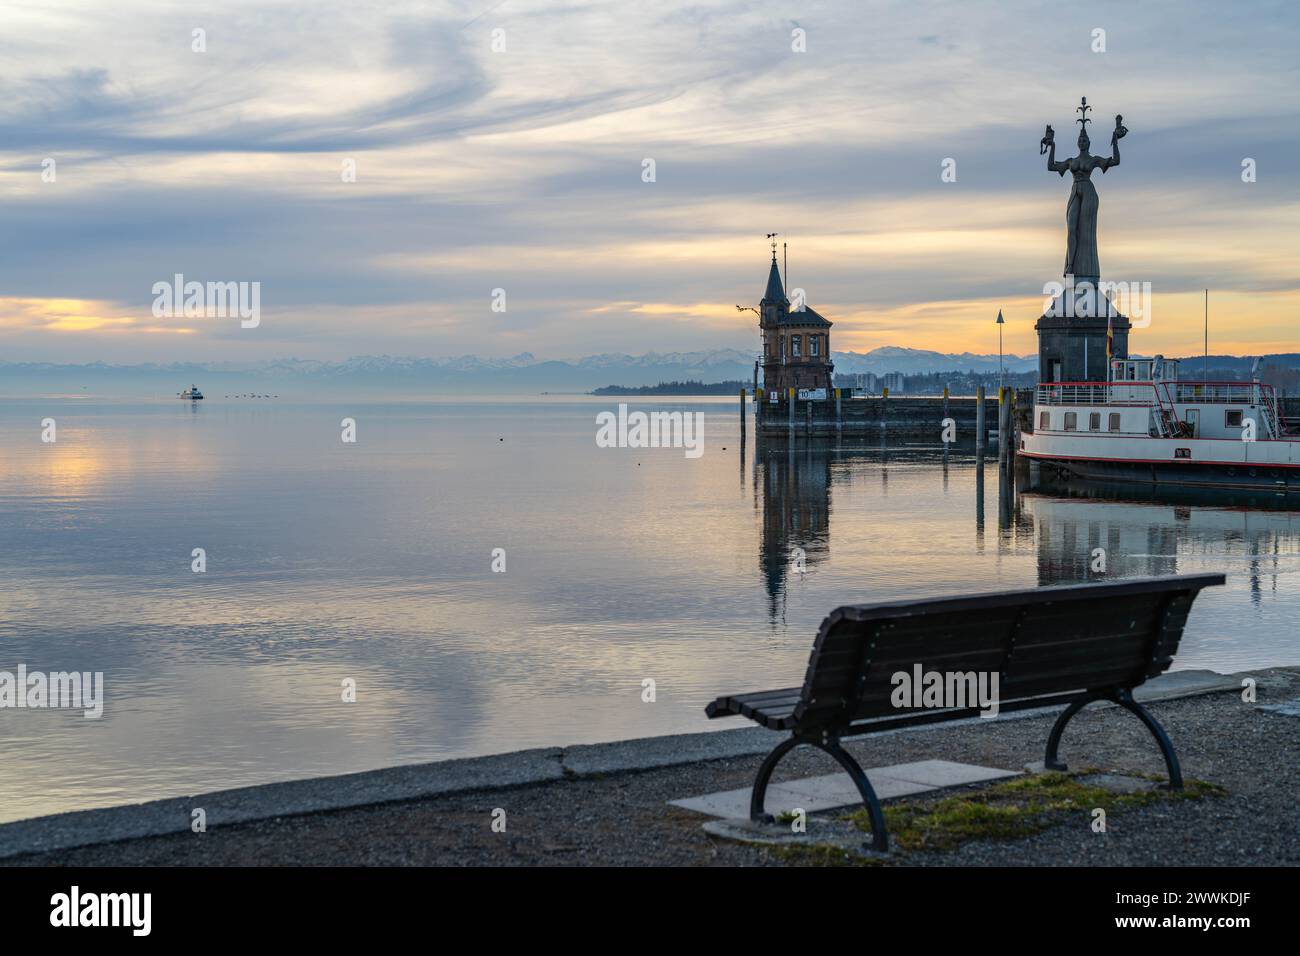 Beschreibung : Blick auf die Hafeneinfahrt von Konstanz mit der Imperia-Statue und der Katamaran-Fähre auf dem See und den schneebedeckten Alpen am Hor Banque D'Images